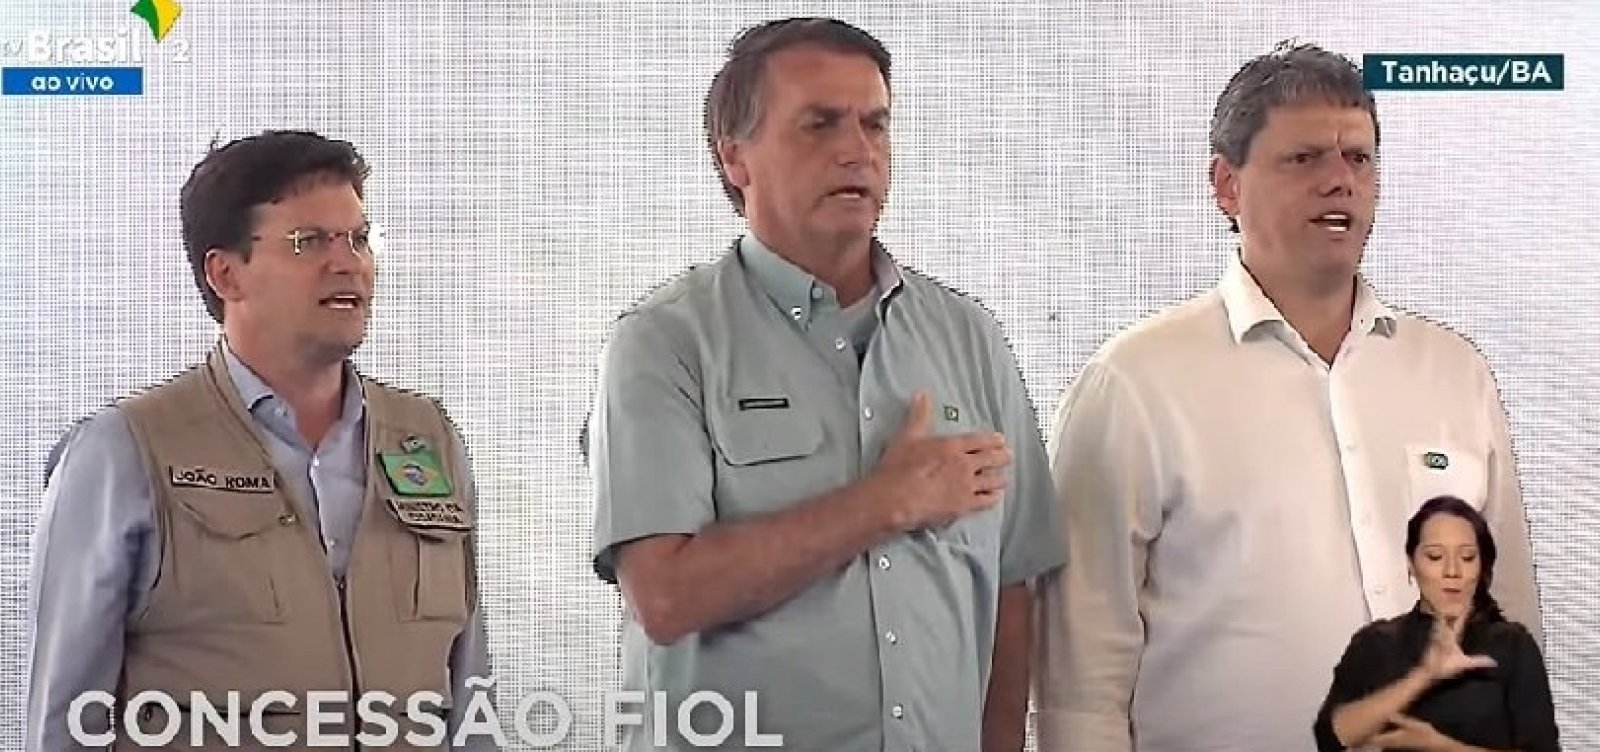 Sem máscara e ao lado de ministros, Bolsonaro assina contrato de concessão da Fiol